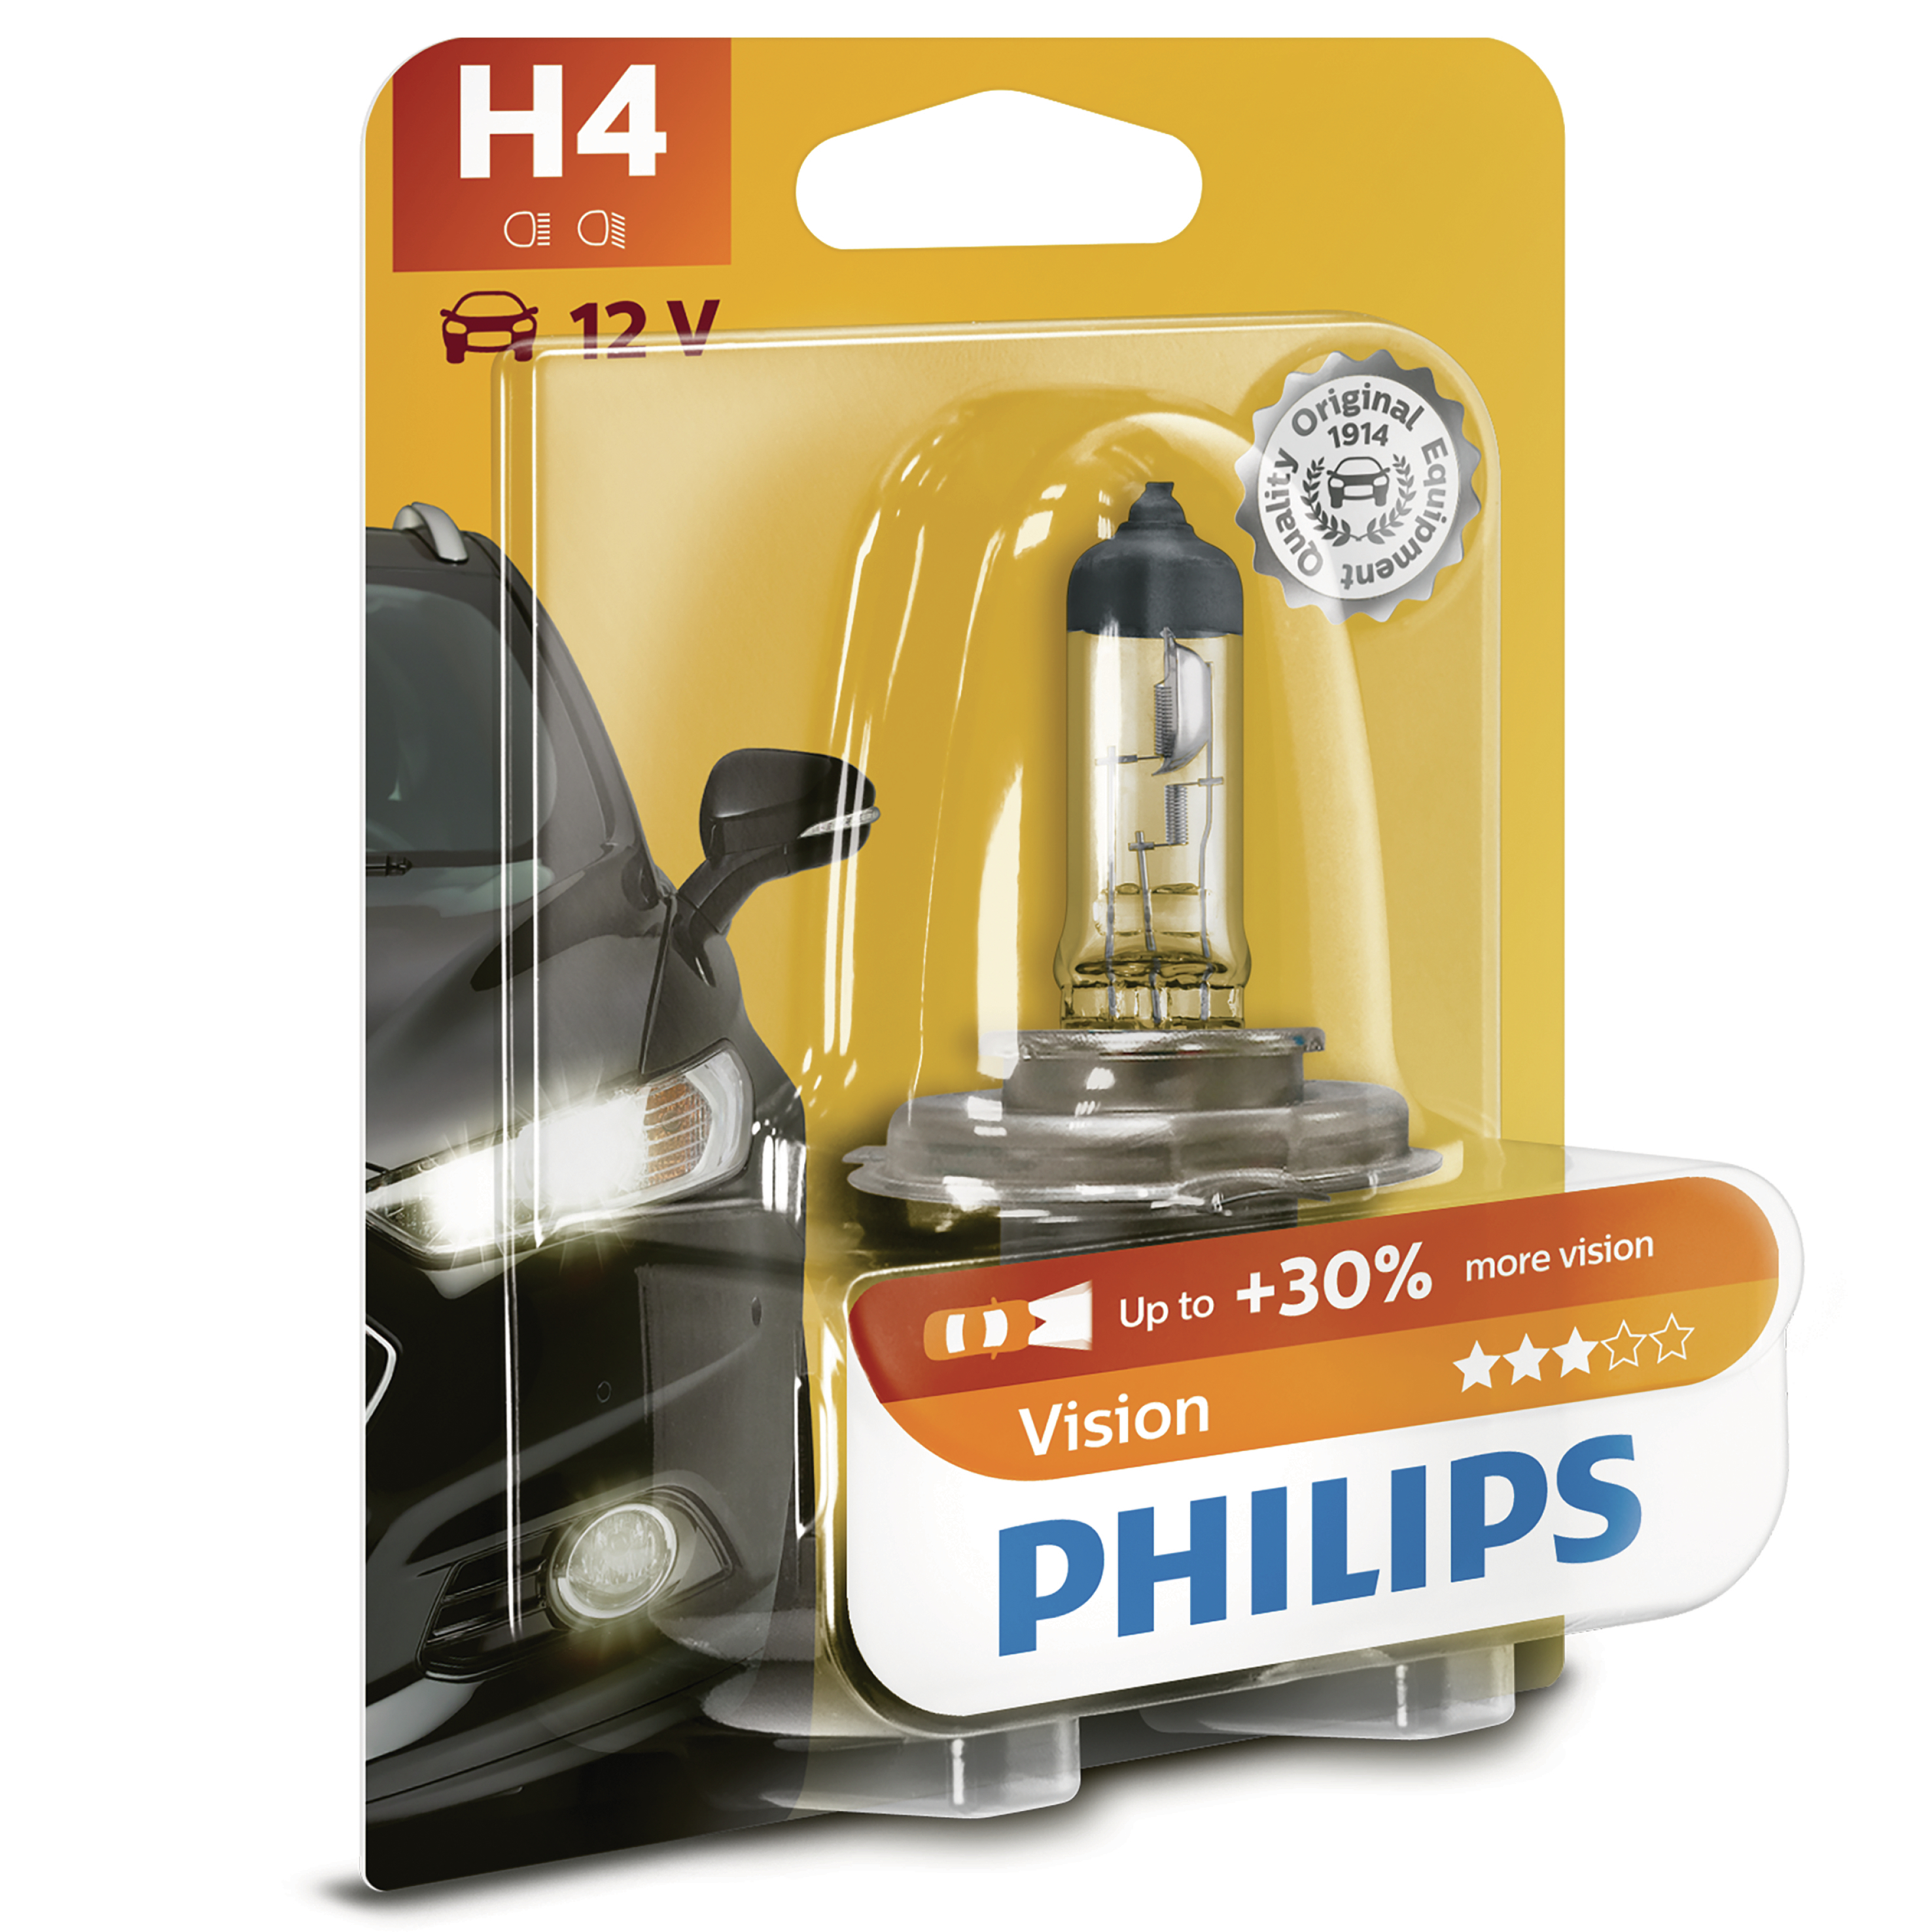 INTERUNION Lampe Philips H4 12V Premium Original